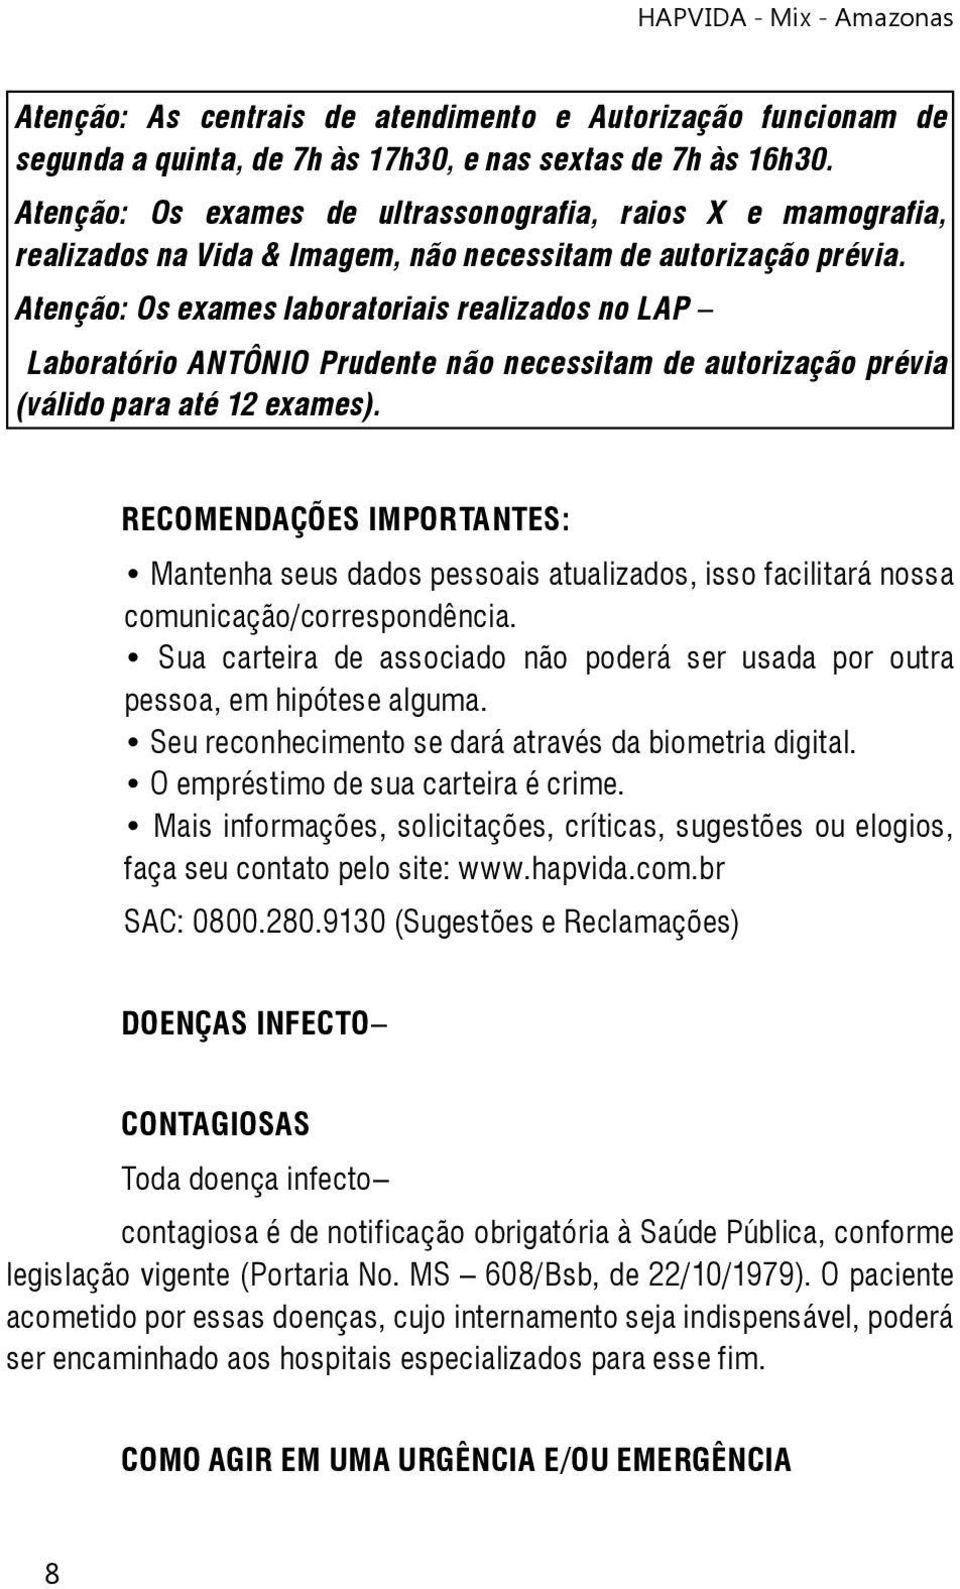 Atenção: Os exames laboratoriais realizados no LAP Laboratório ANTÔNIO Prudente não necessitam de autorização prévia (válido para até 12 exames).